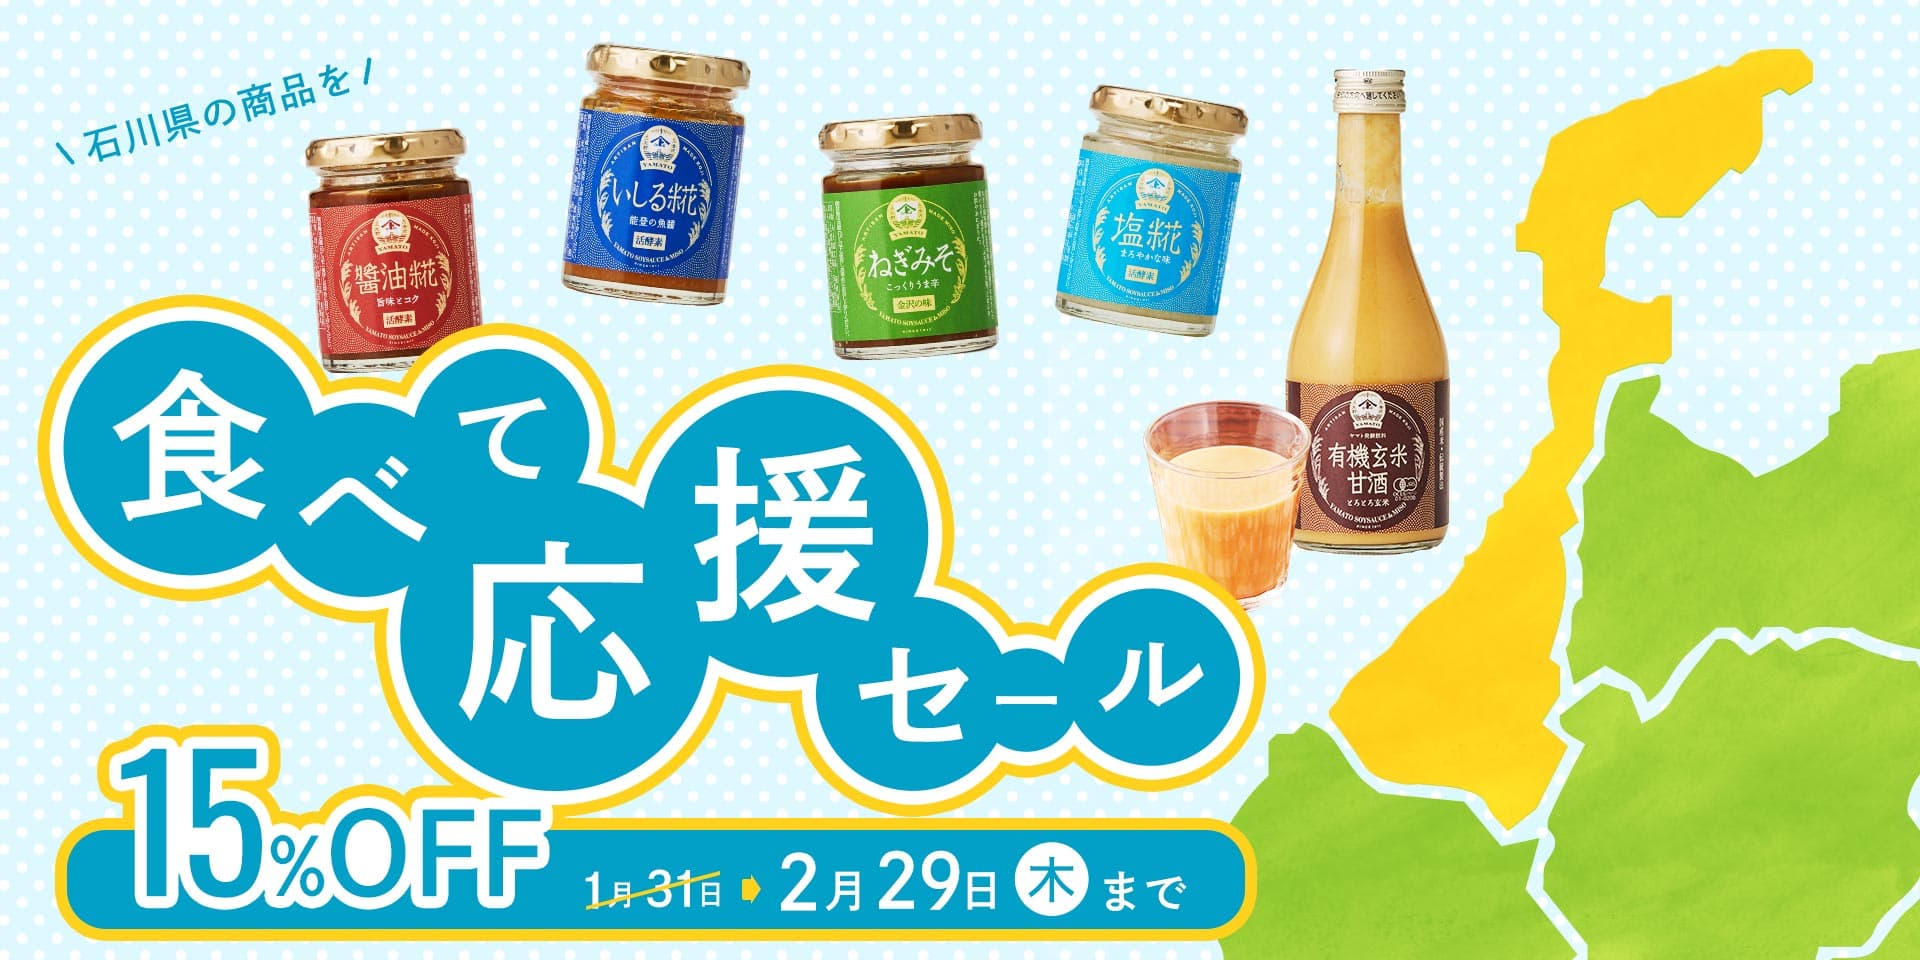 OH!!!オンラインストア 石川県の商品を食べて応援セール